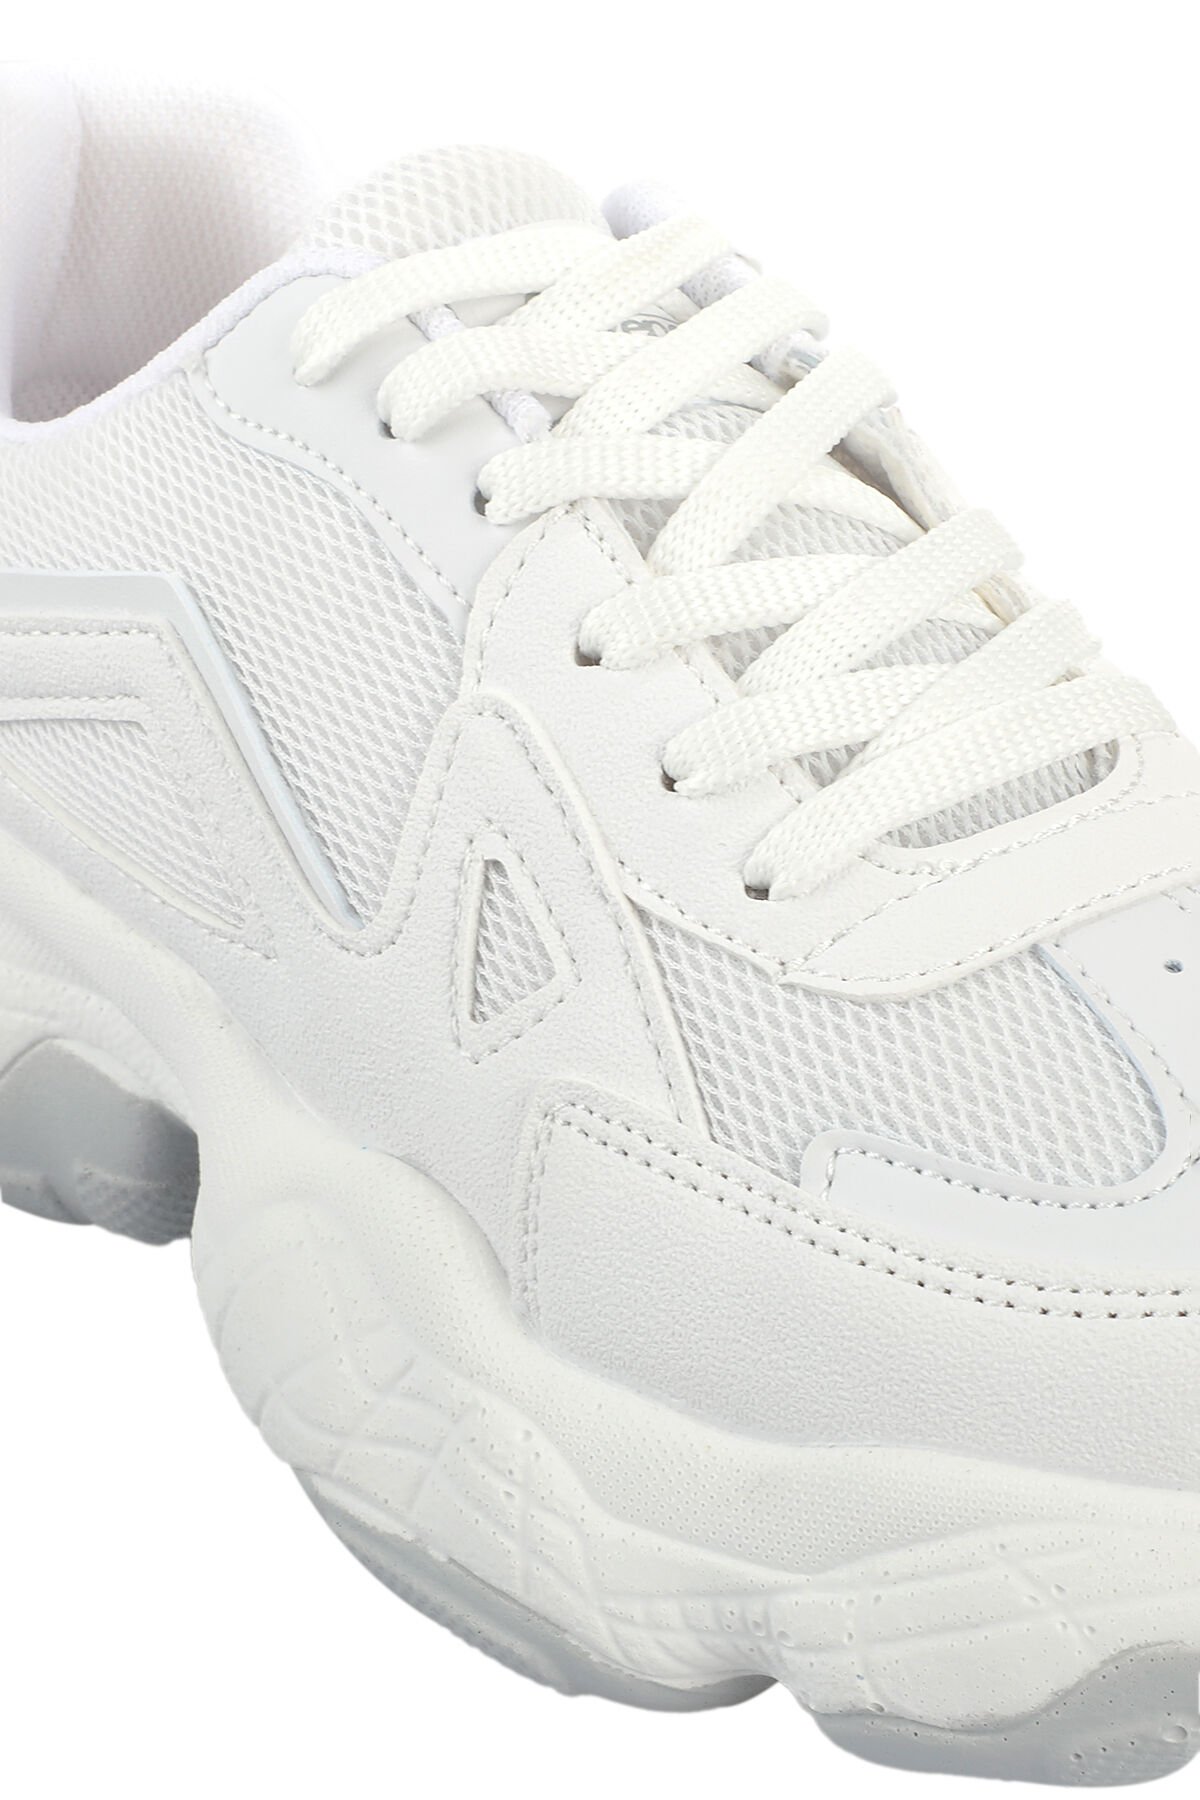 ZEF Sneaker Kadın Ayakkabı Beyaz - Thumbnail